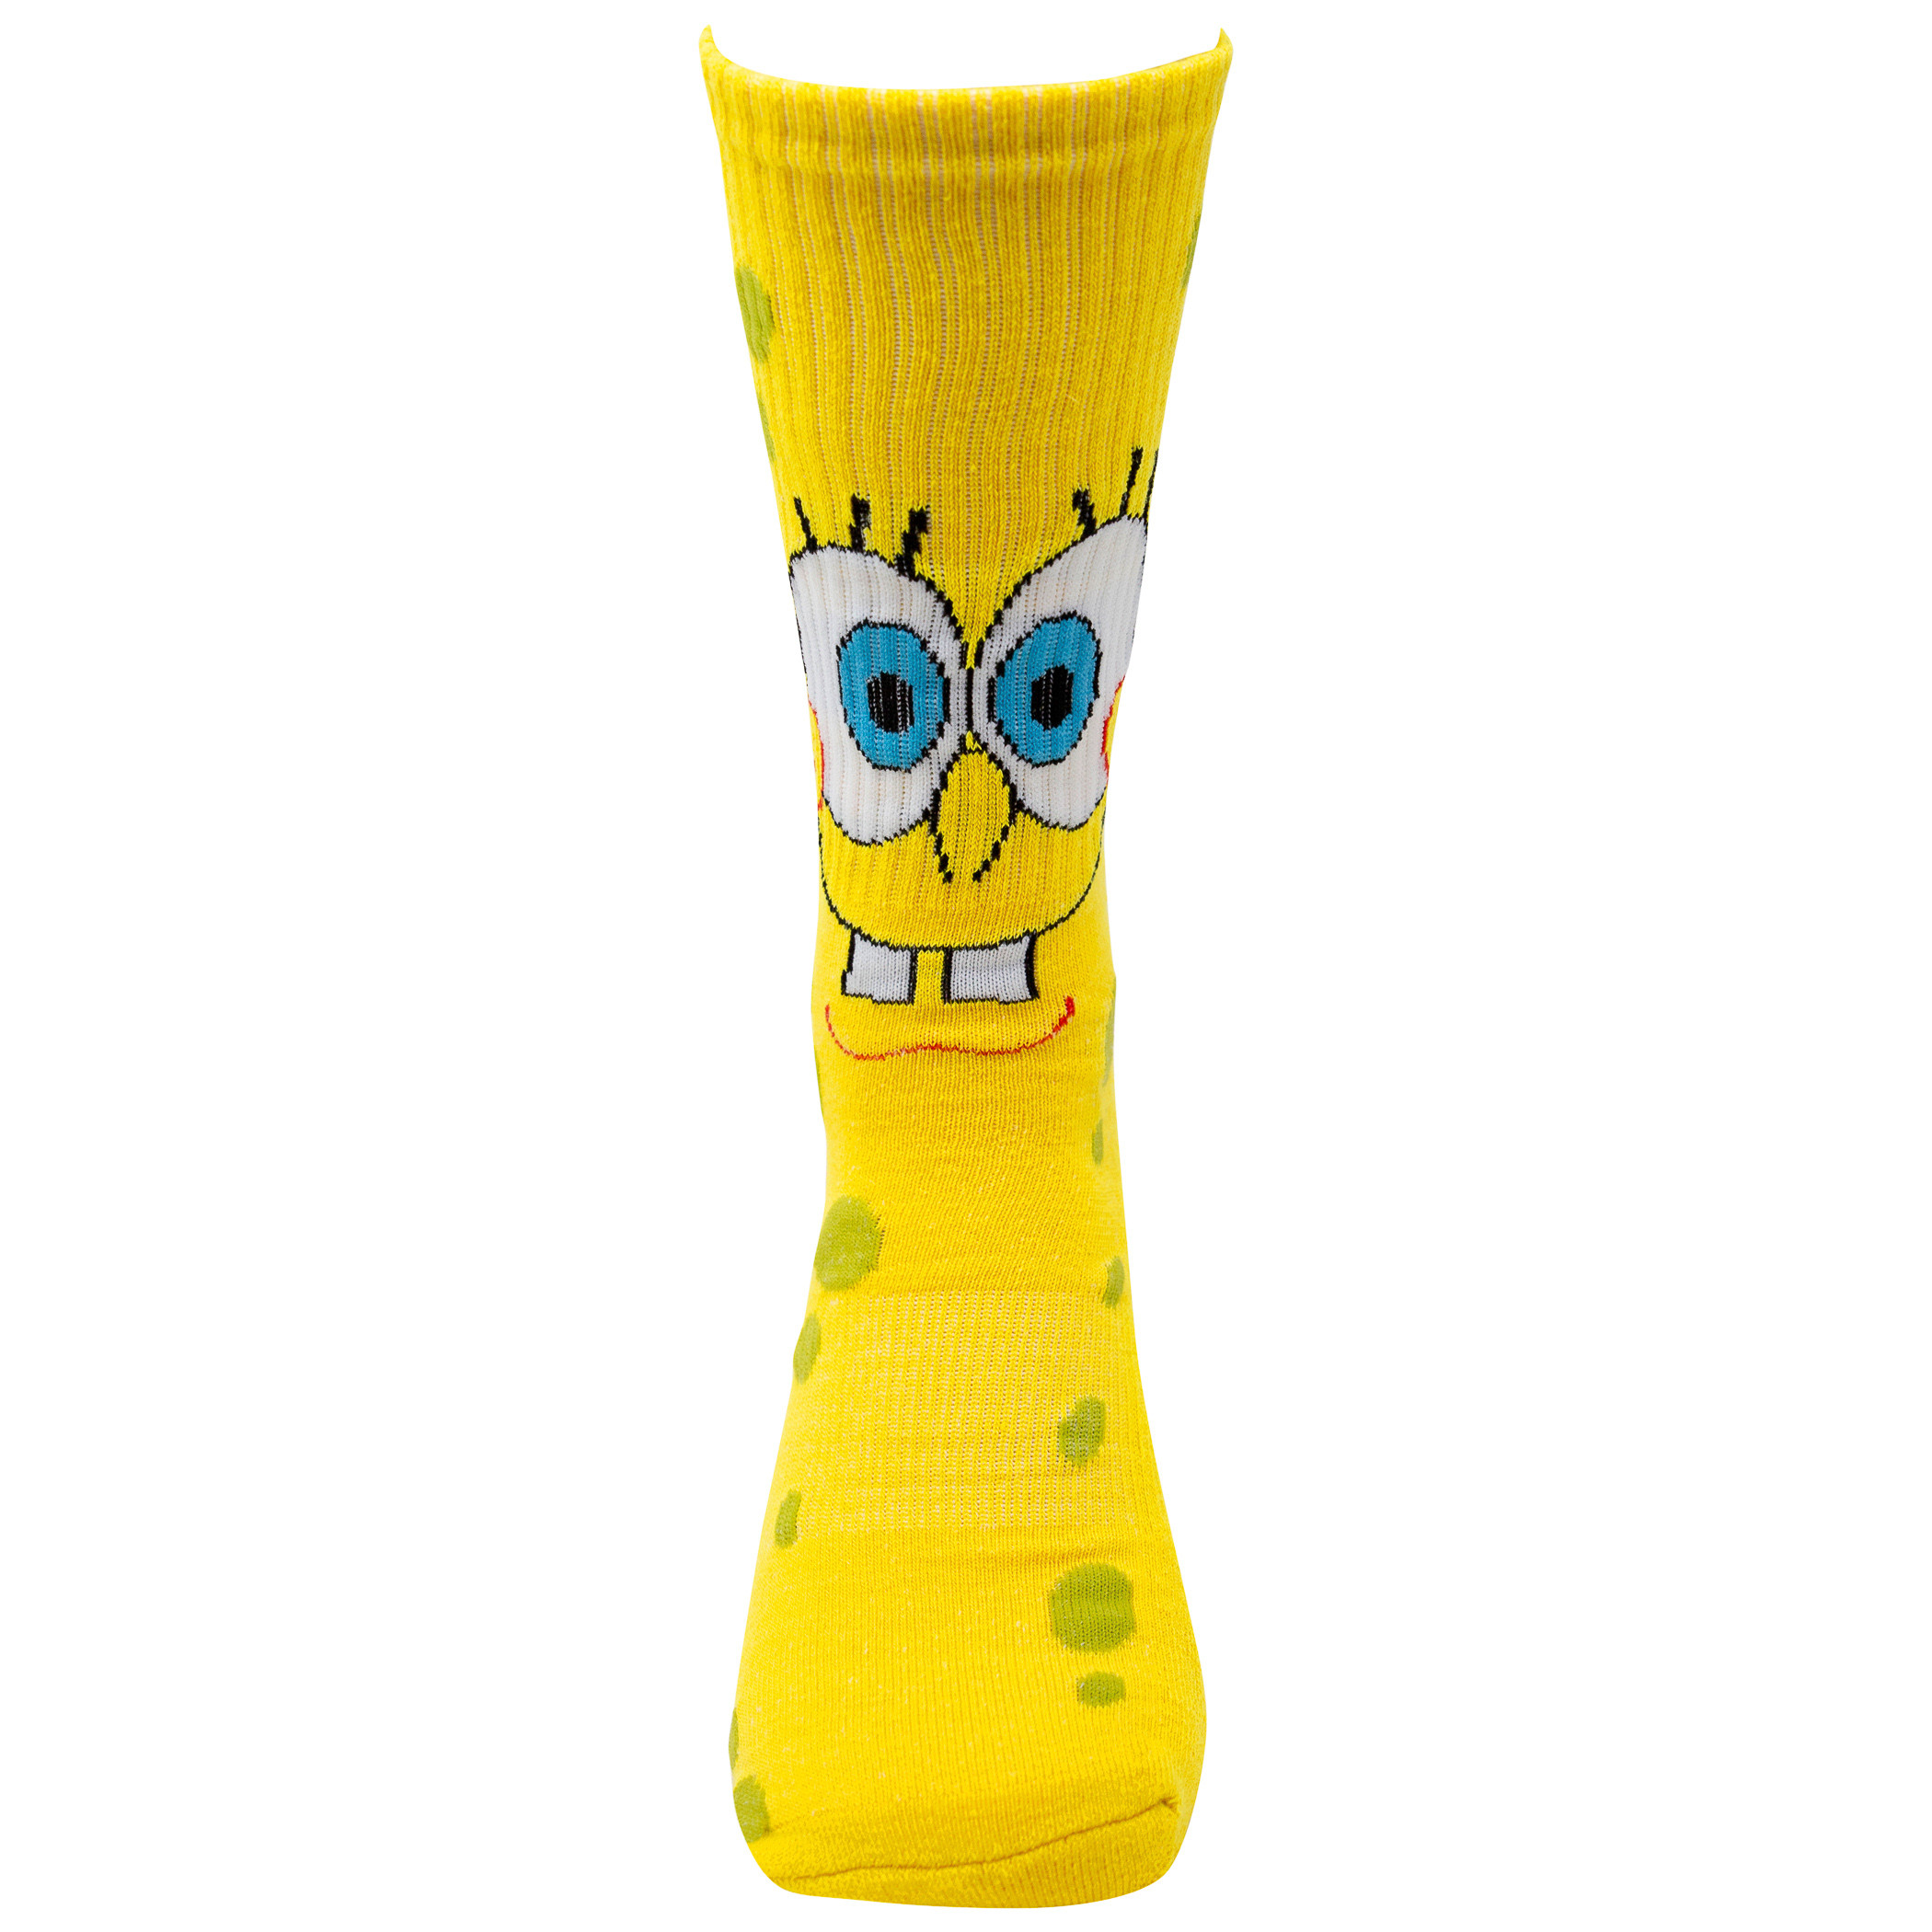 SpongeBob SquarePants and Squidward 2-Pair Pack Character Socks